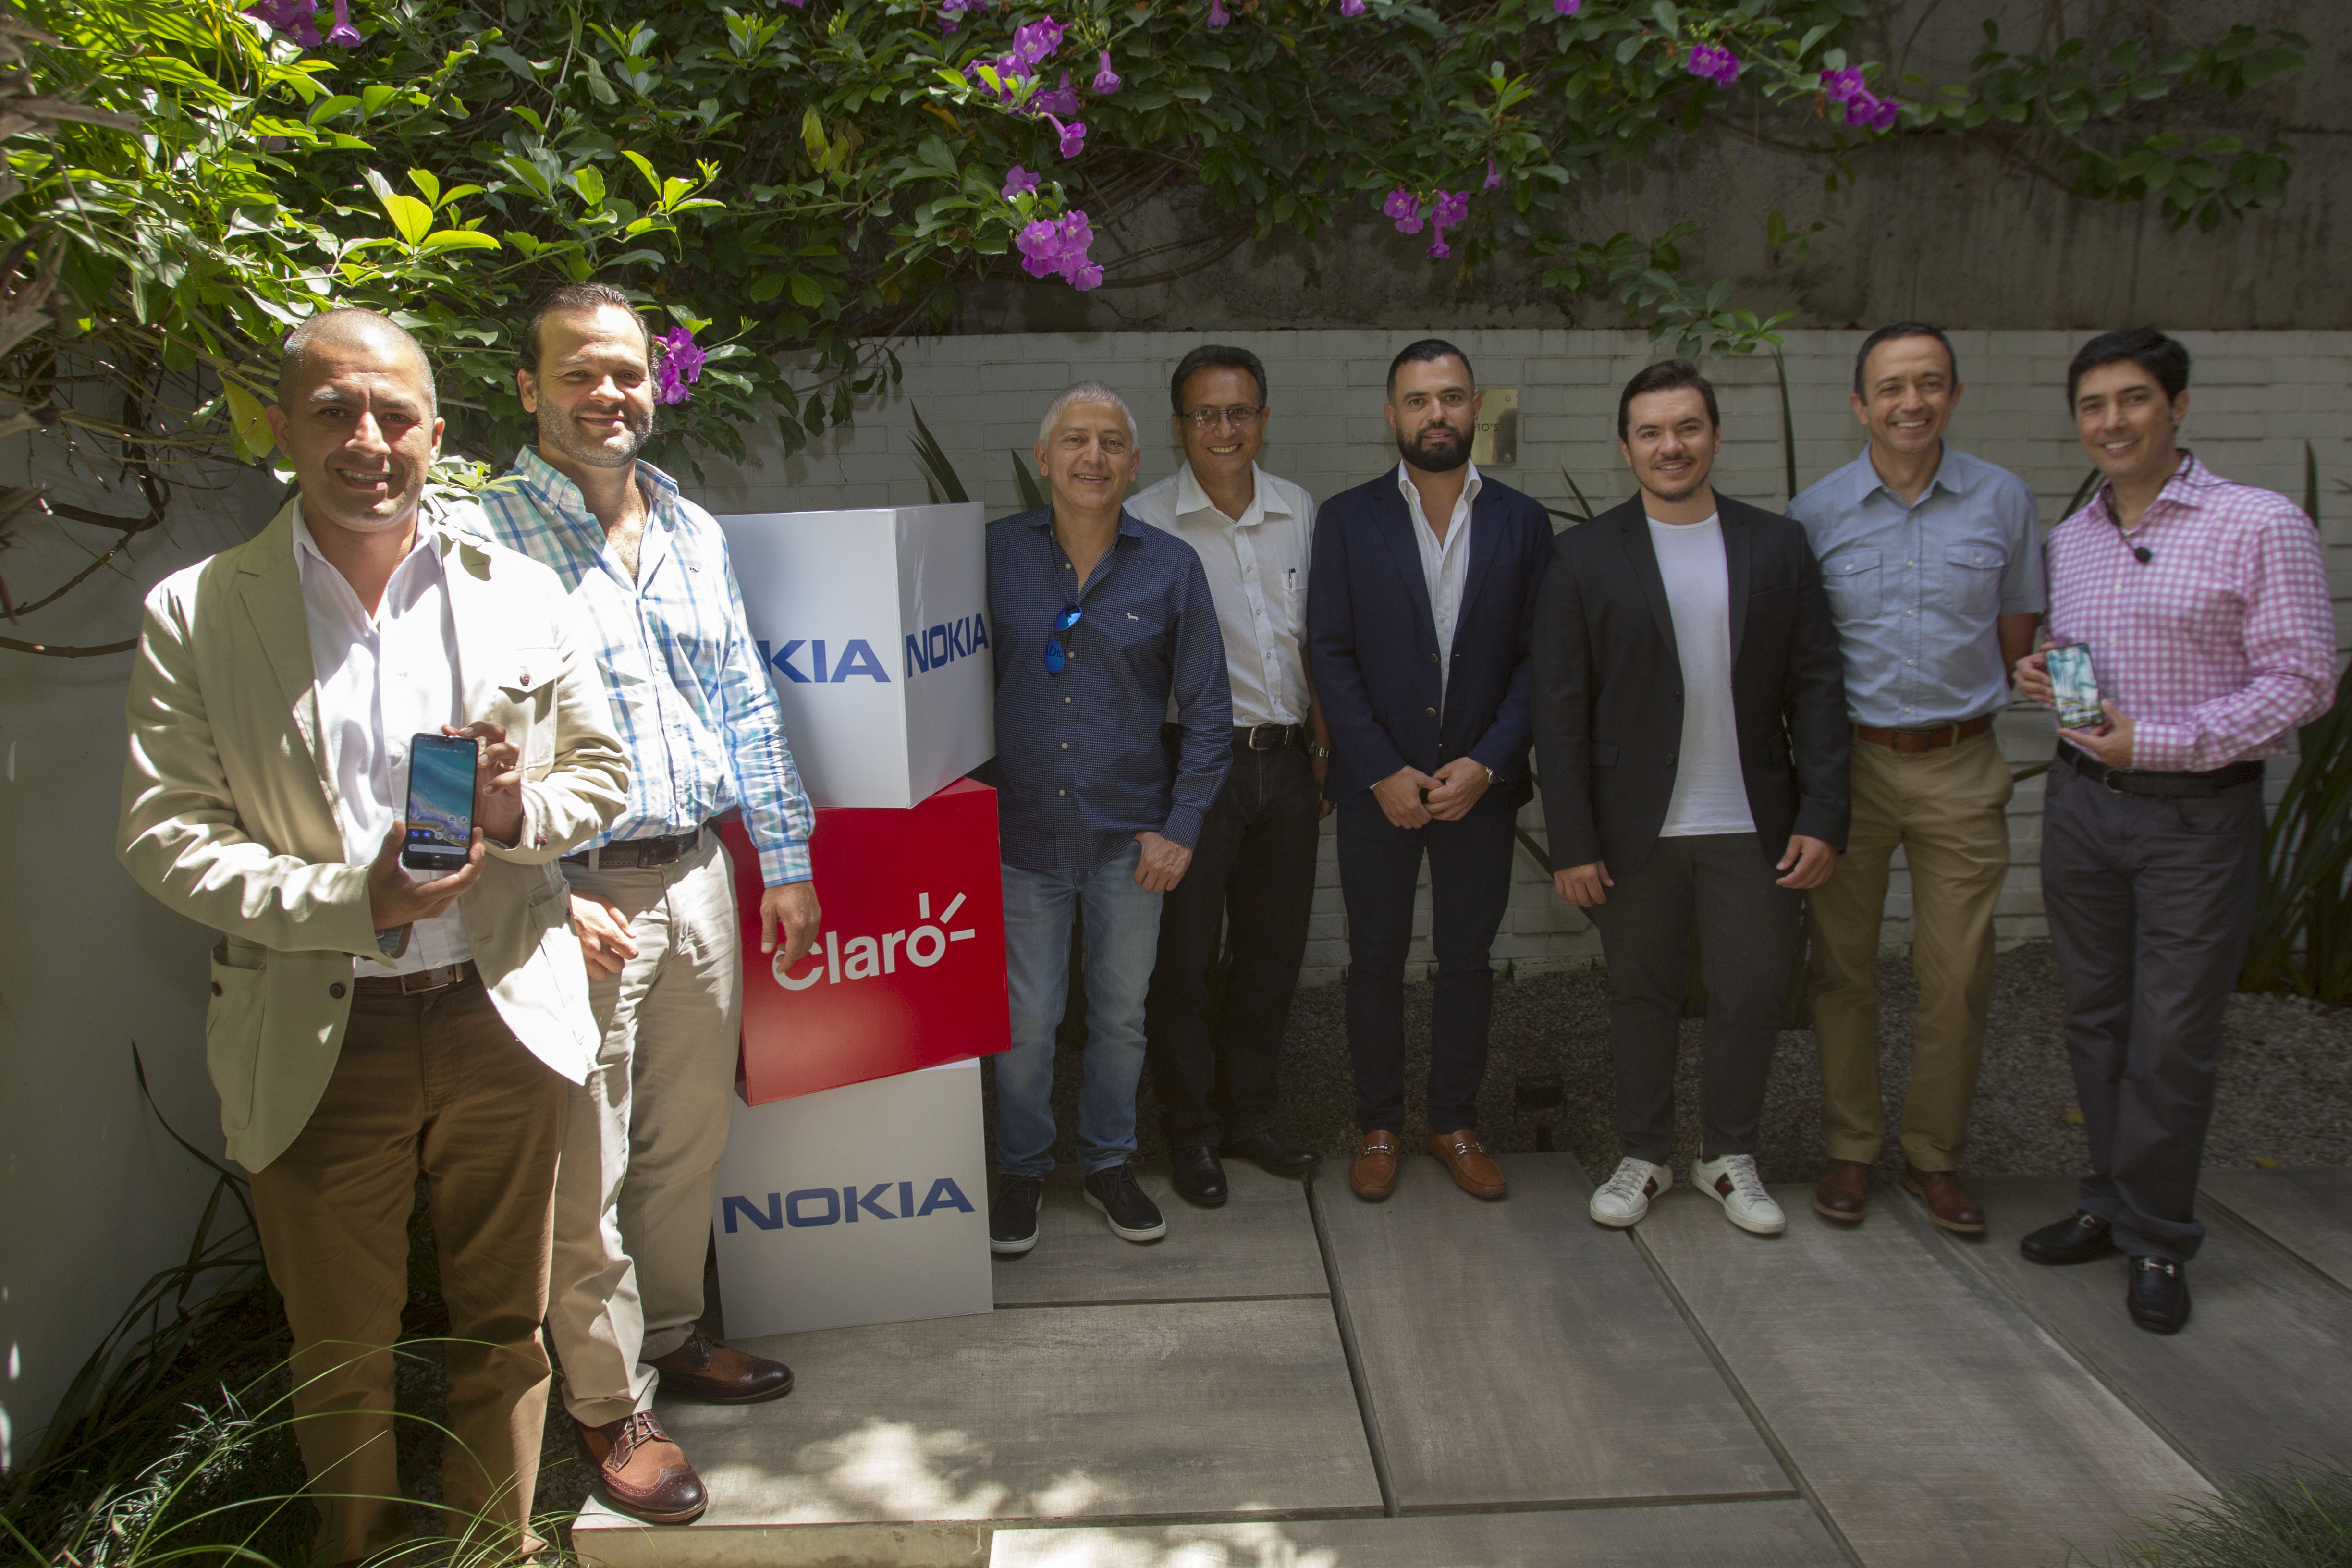 Representantes de Claro y Nokia junto a distribuidores en la presentación de los nuevos celulares Nokia. Foto Norvin Mendoza